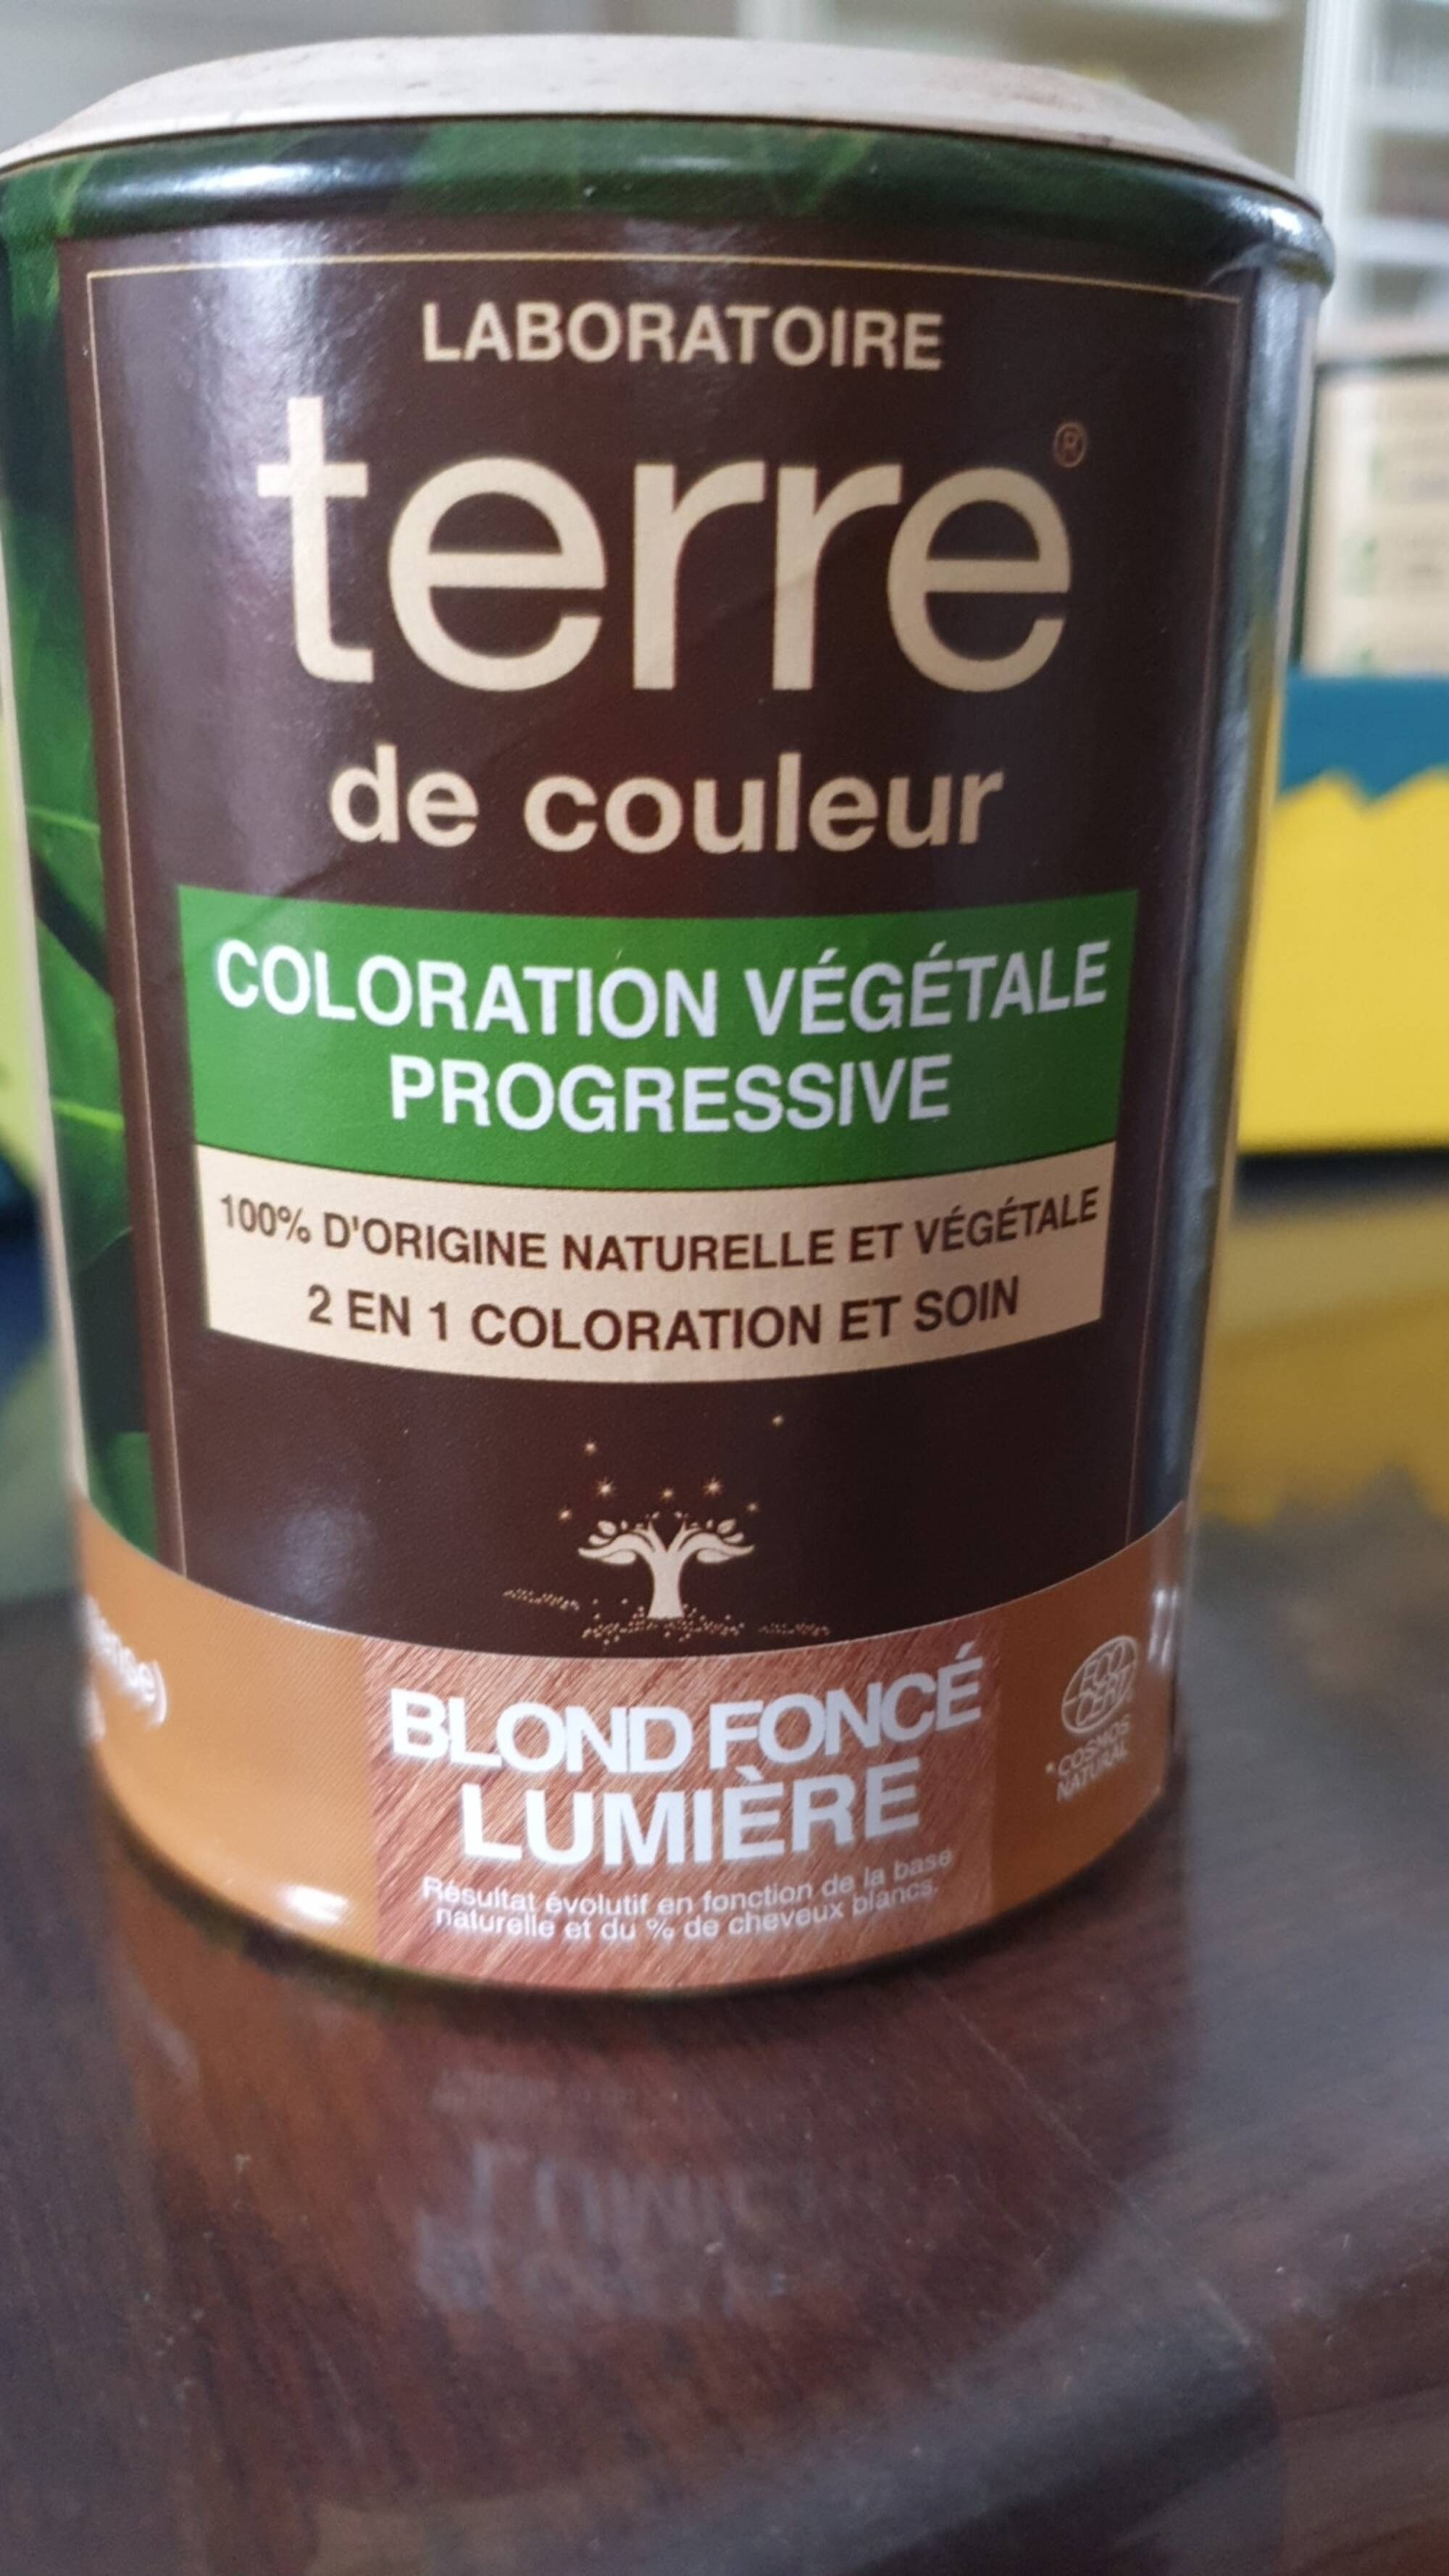 TERRE DE COULEUR - Coloration végétale progressive Blond foncé lumière